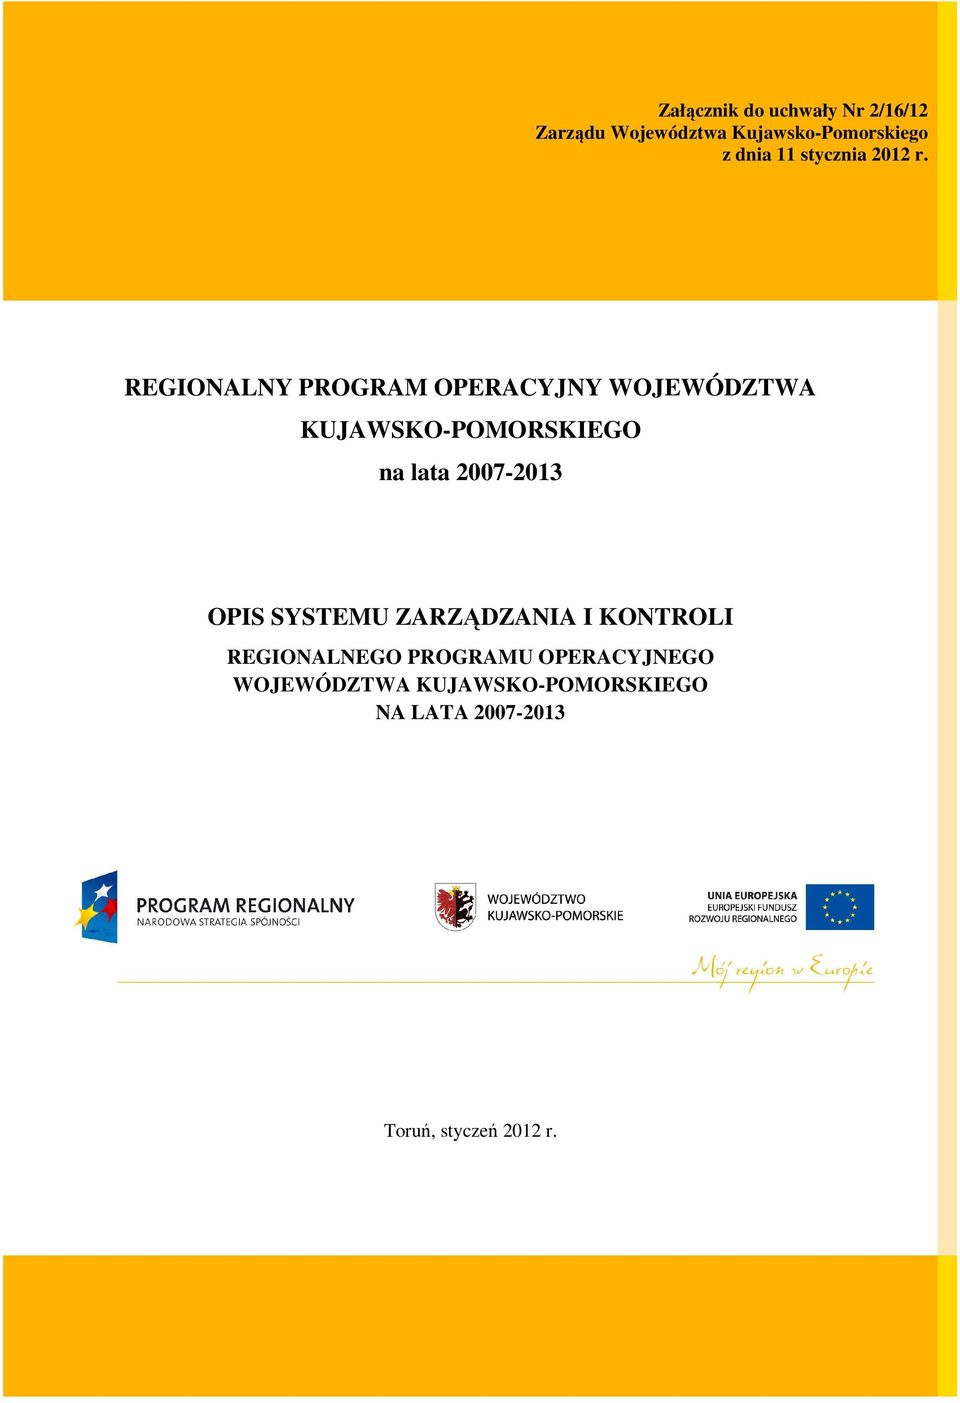 REGIONALNY PROGRAM OPERACYJNY WOJEWÓDZTWA KUJAWSKO-POMORSKIEGO na lata 2007-2013